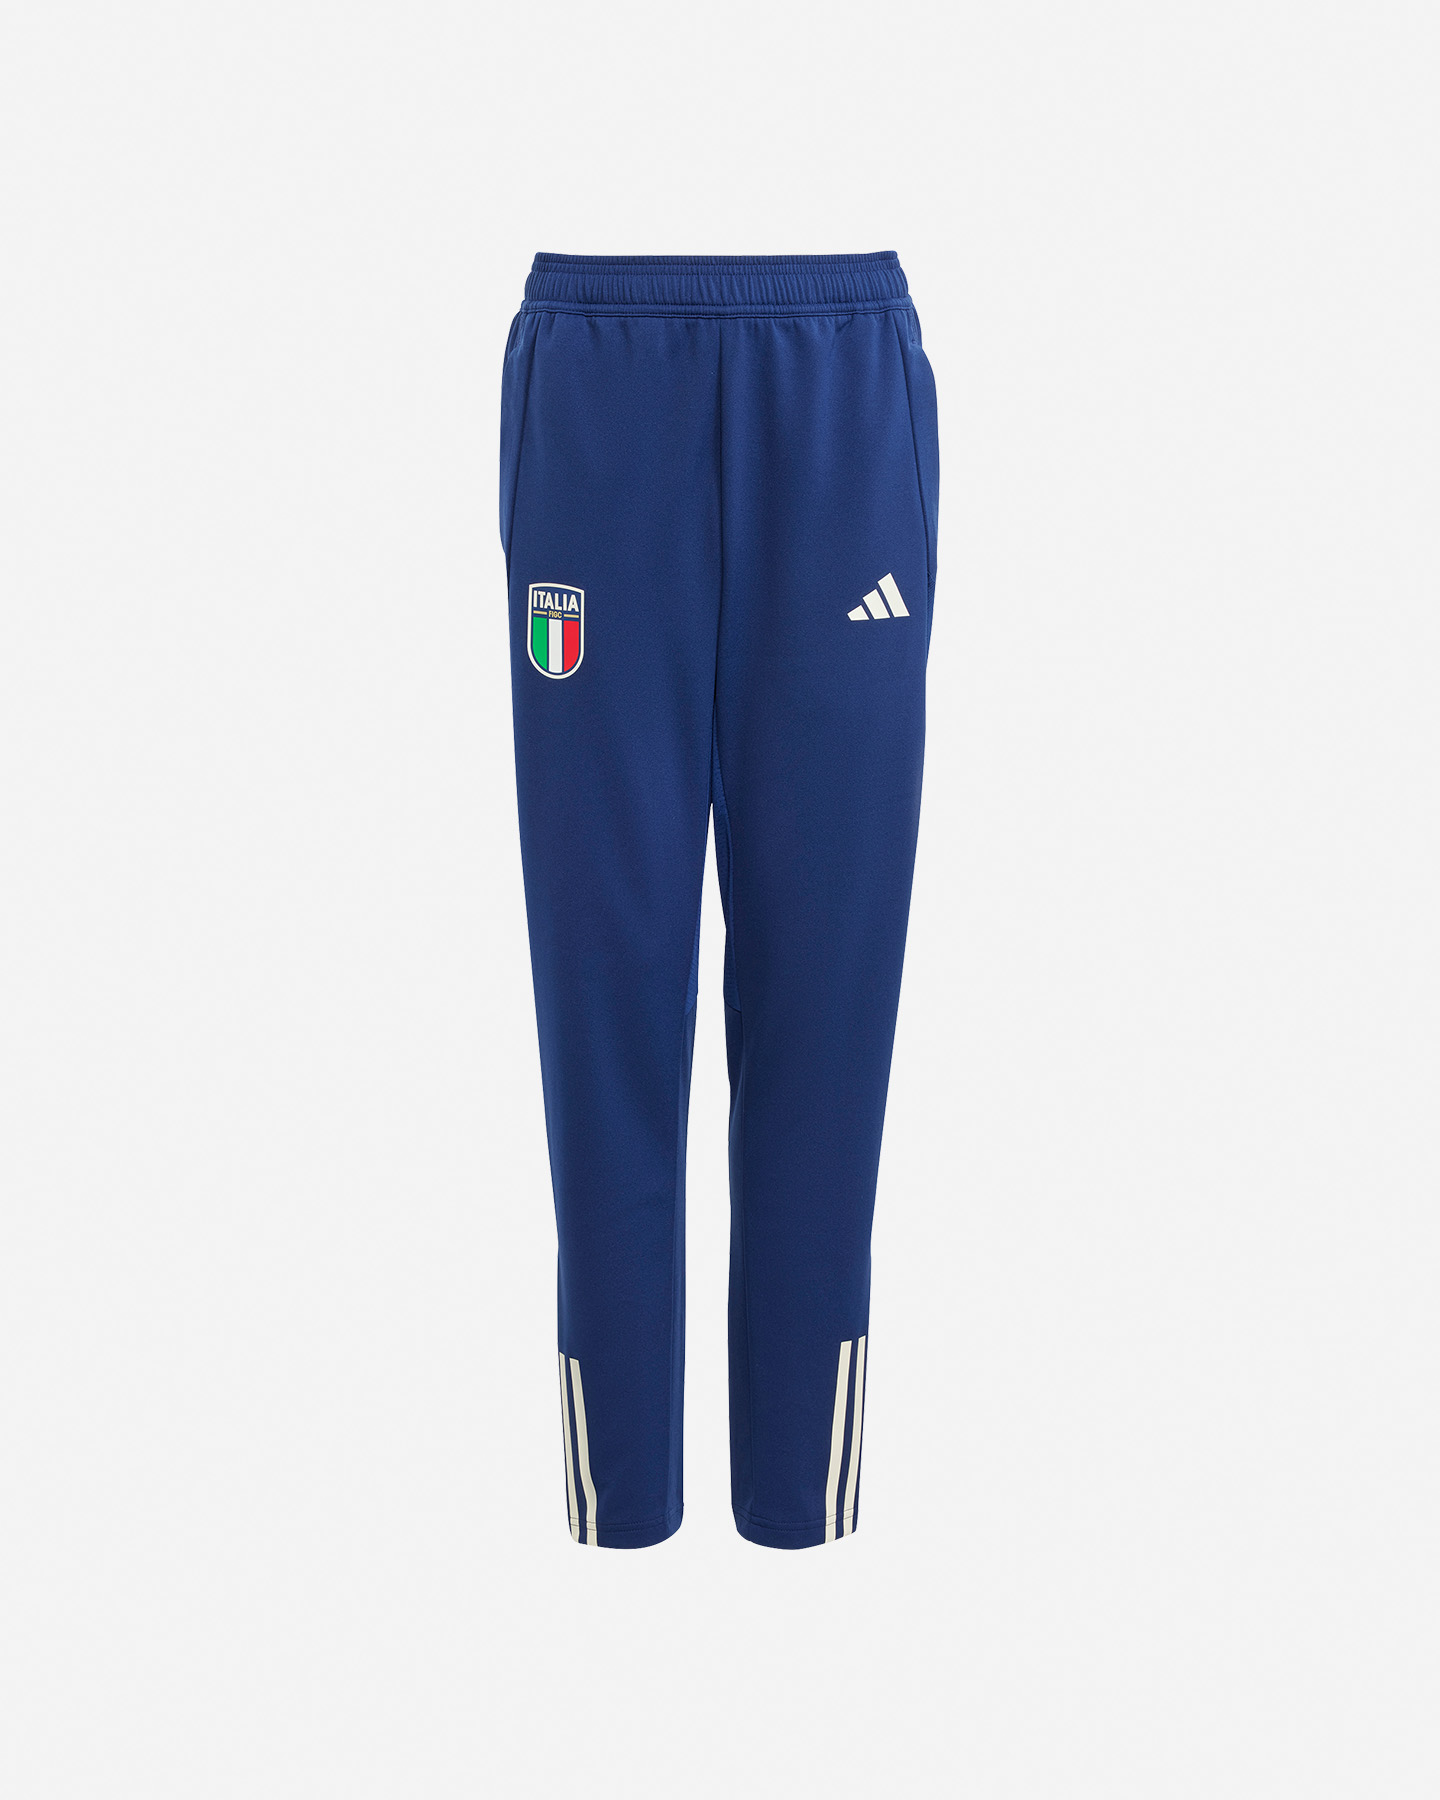 Image of Adidas Italia Training Jr - Abbigliamento Calcio